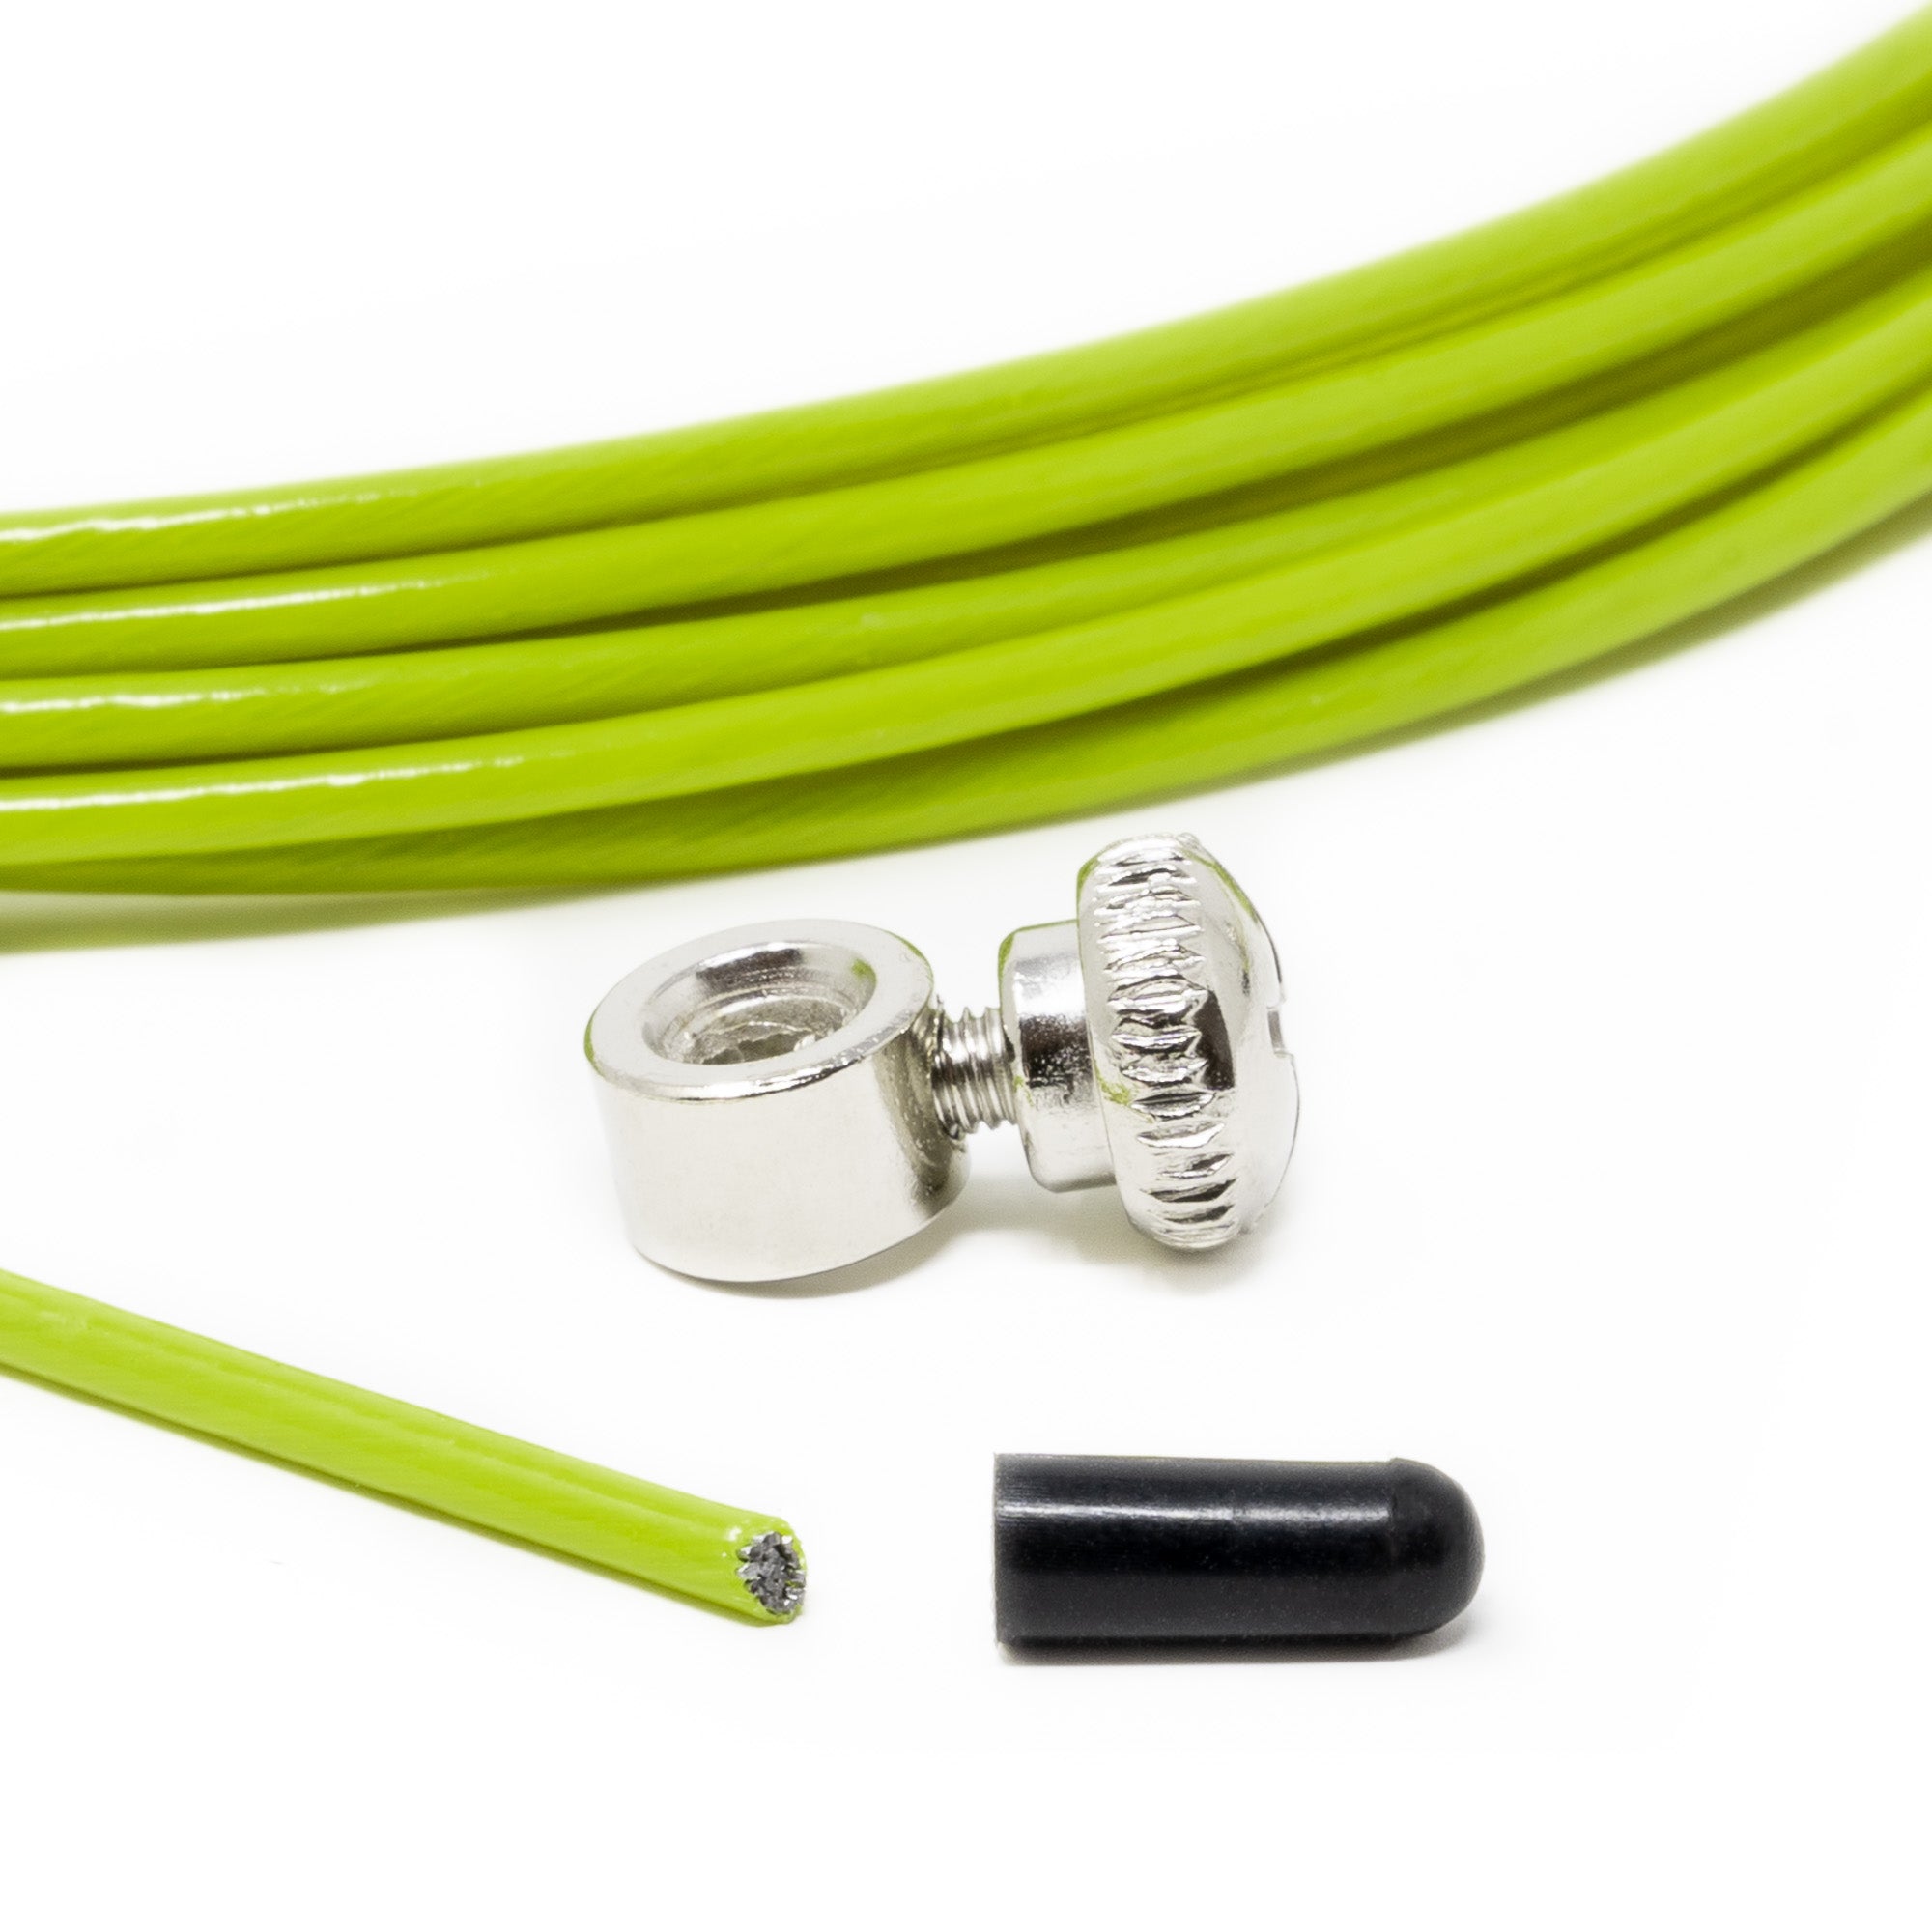 Velites I Cable de Repuesto para Comba de Saltar de Crosstraining, Fitness  y Boxeo, Estándar 4mm Verde